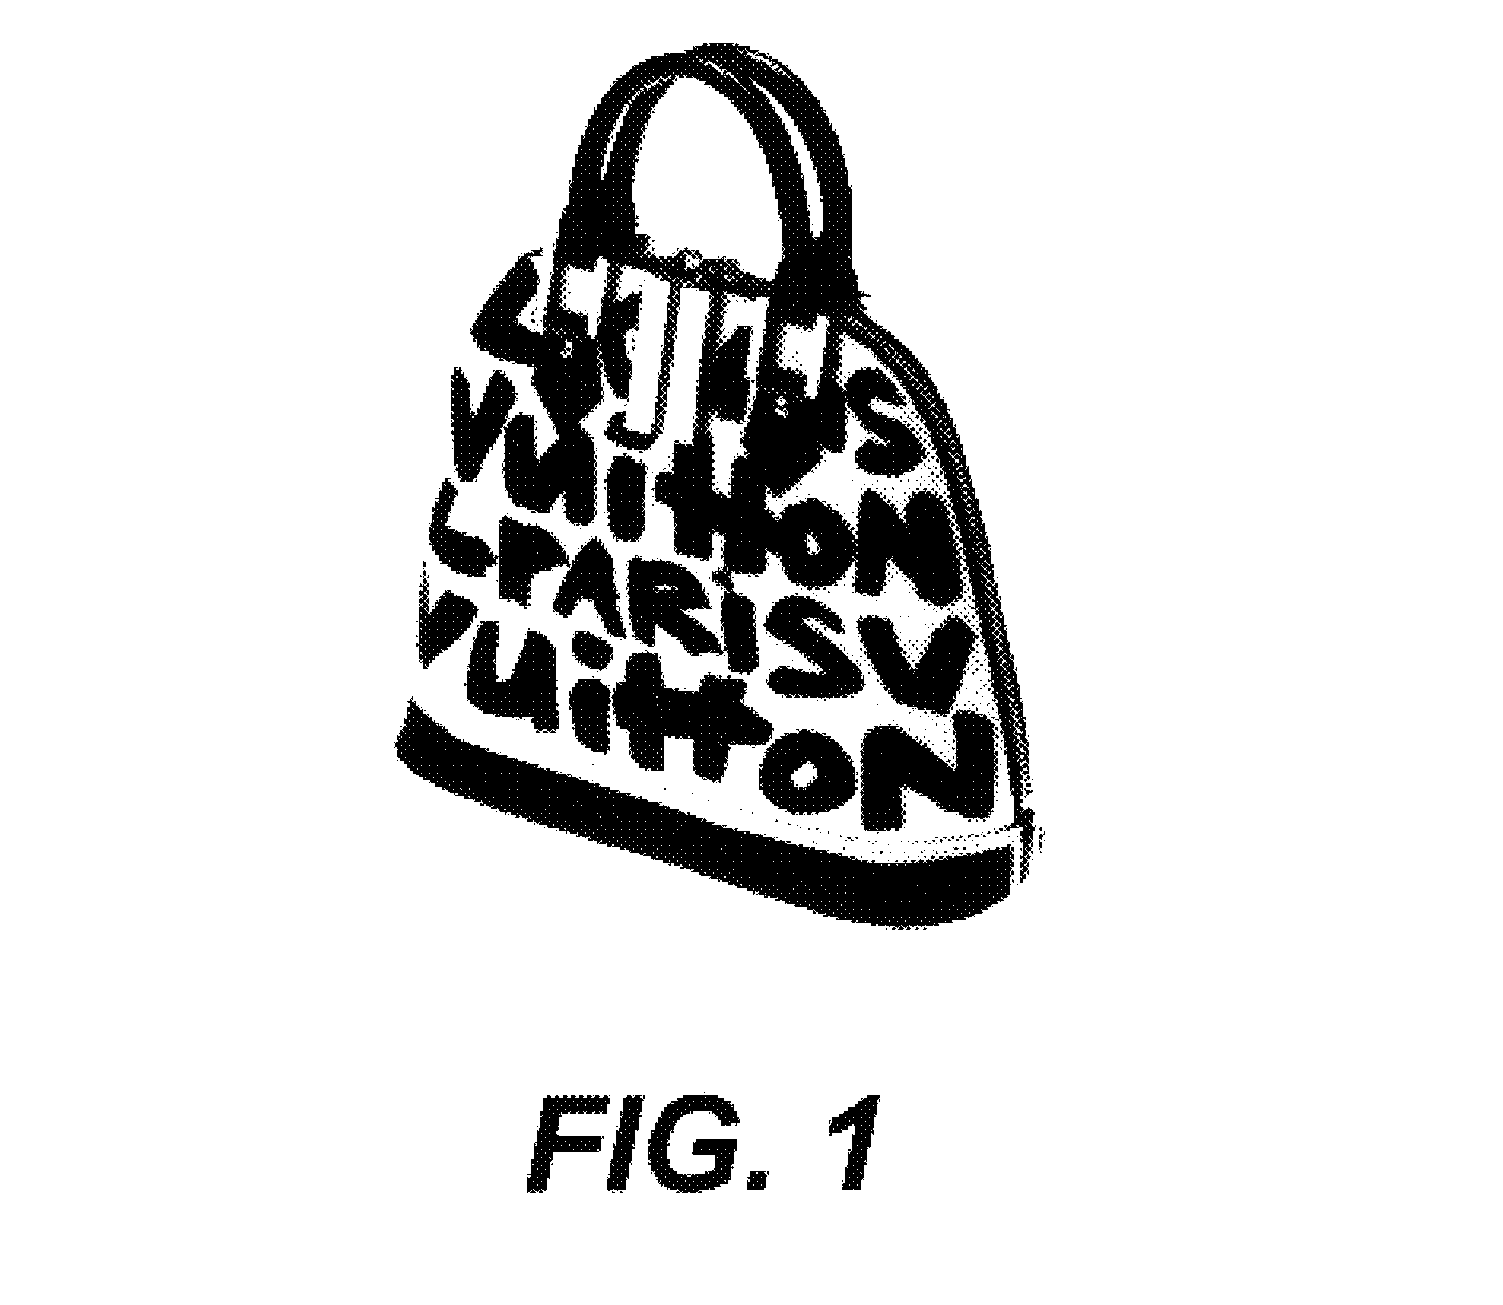 example of a Louis Vuitton handbag design